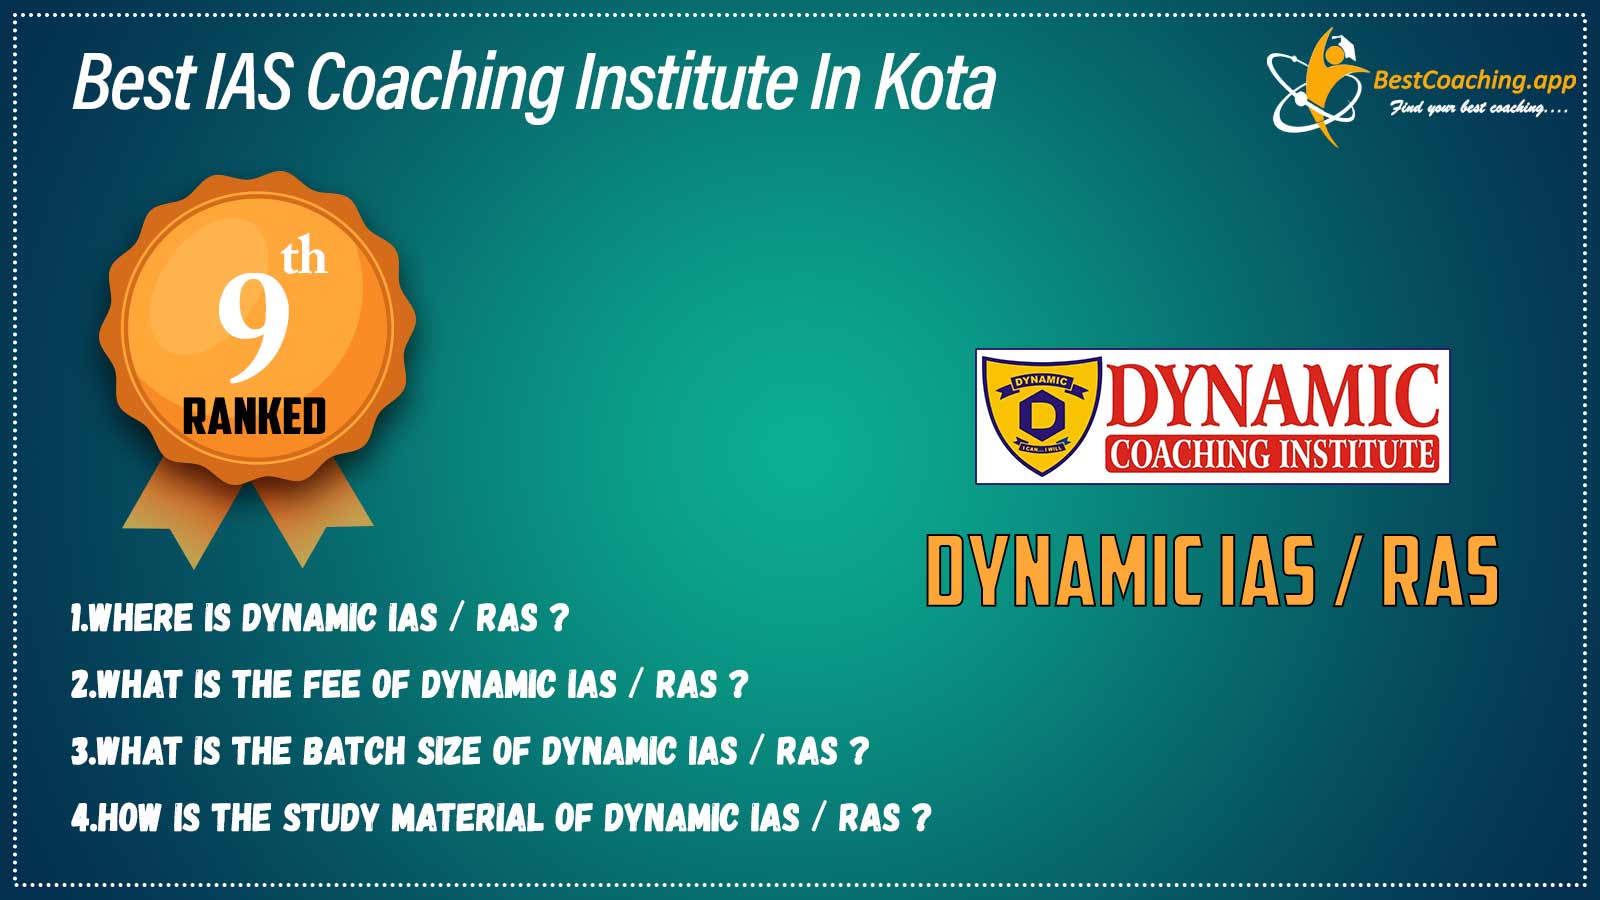 Top IAS Coaching Institute in kota